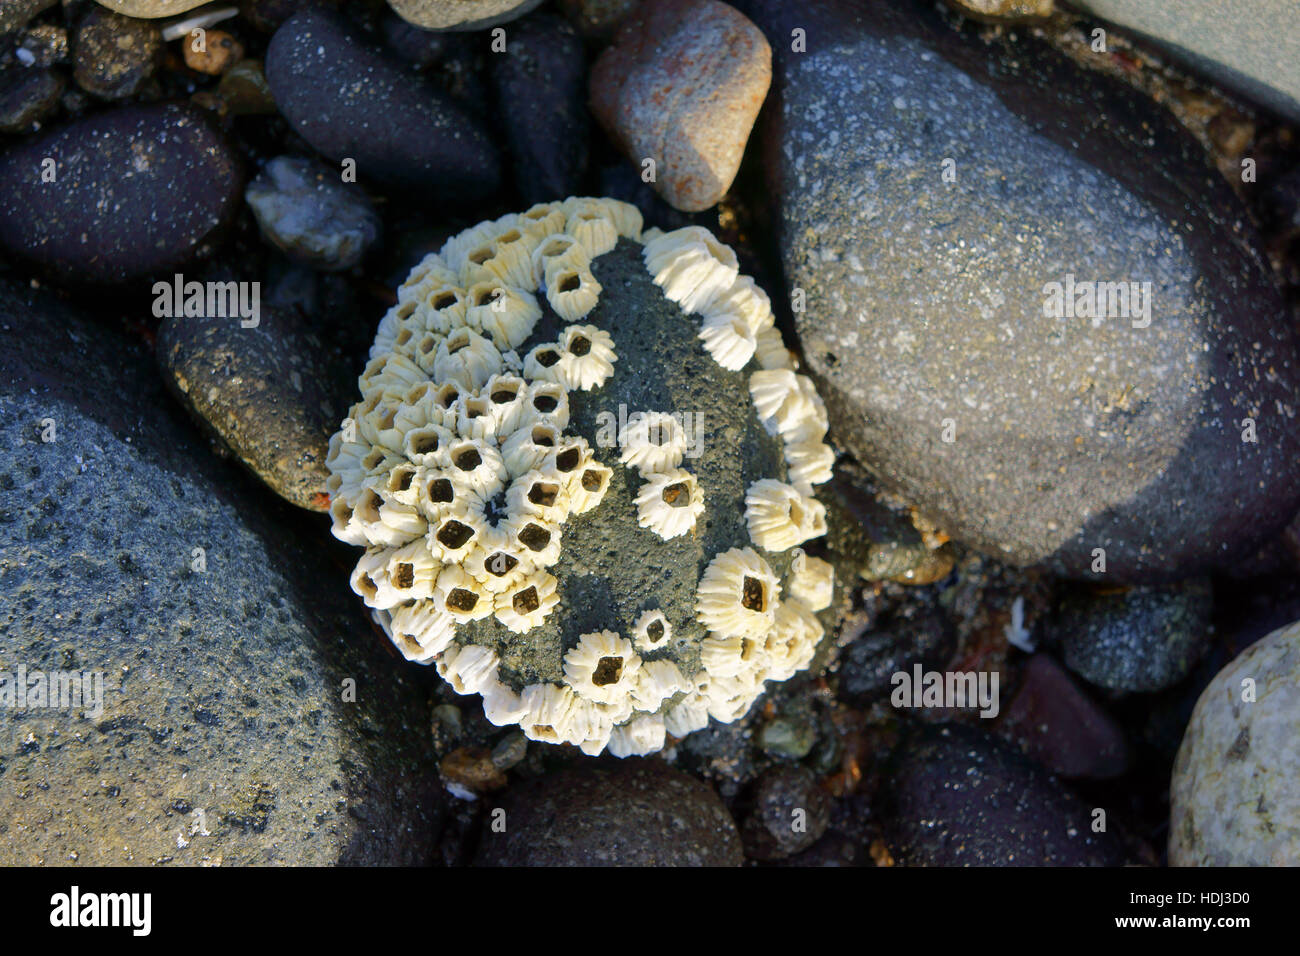 Barnacles on rock on beach, Katmai National Park, Alaska Stock Photo